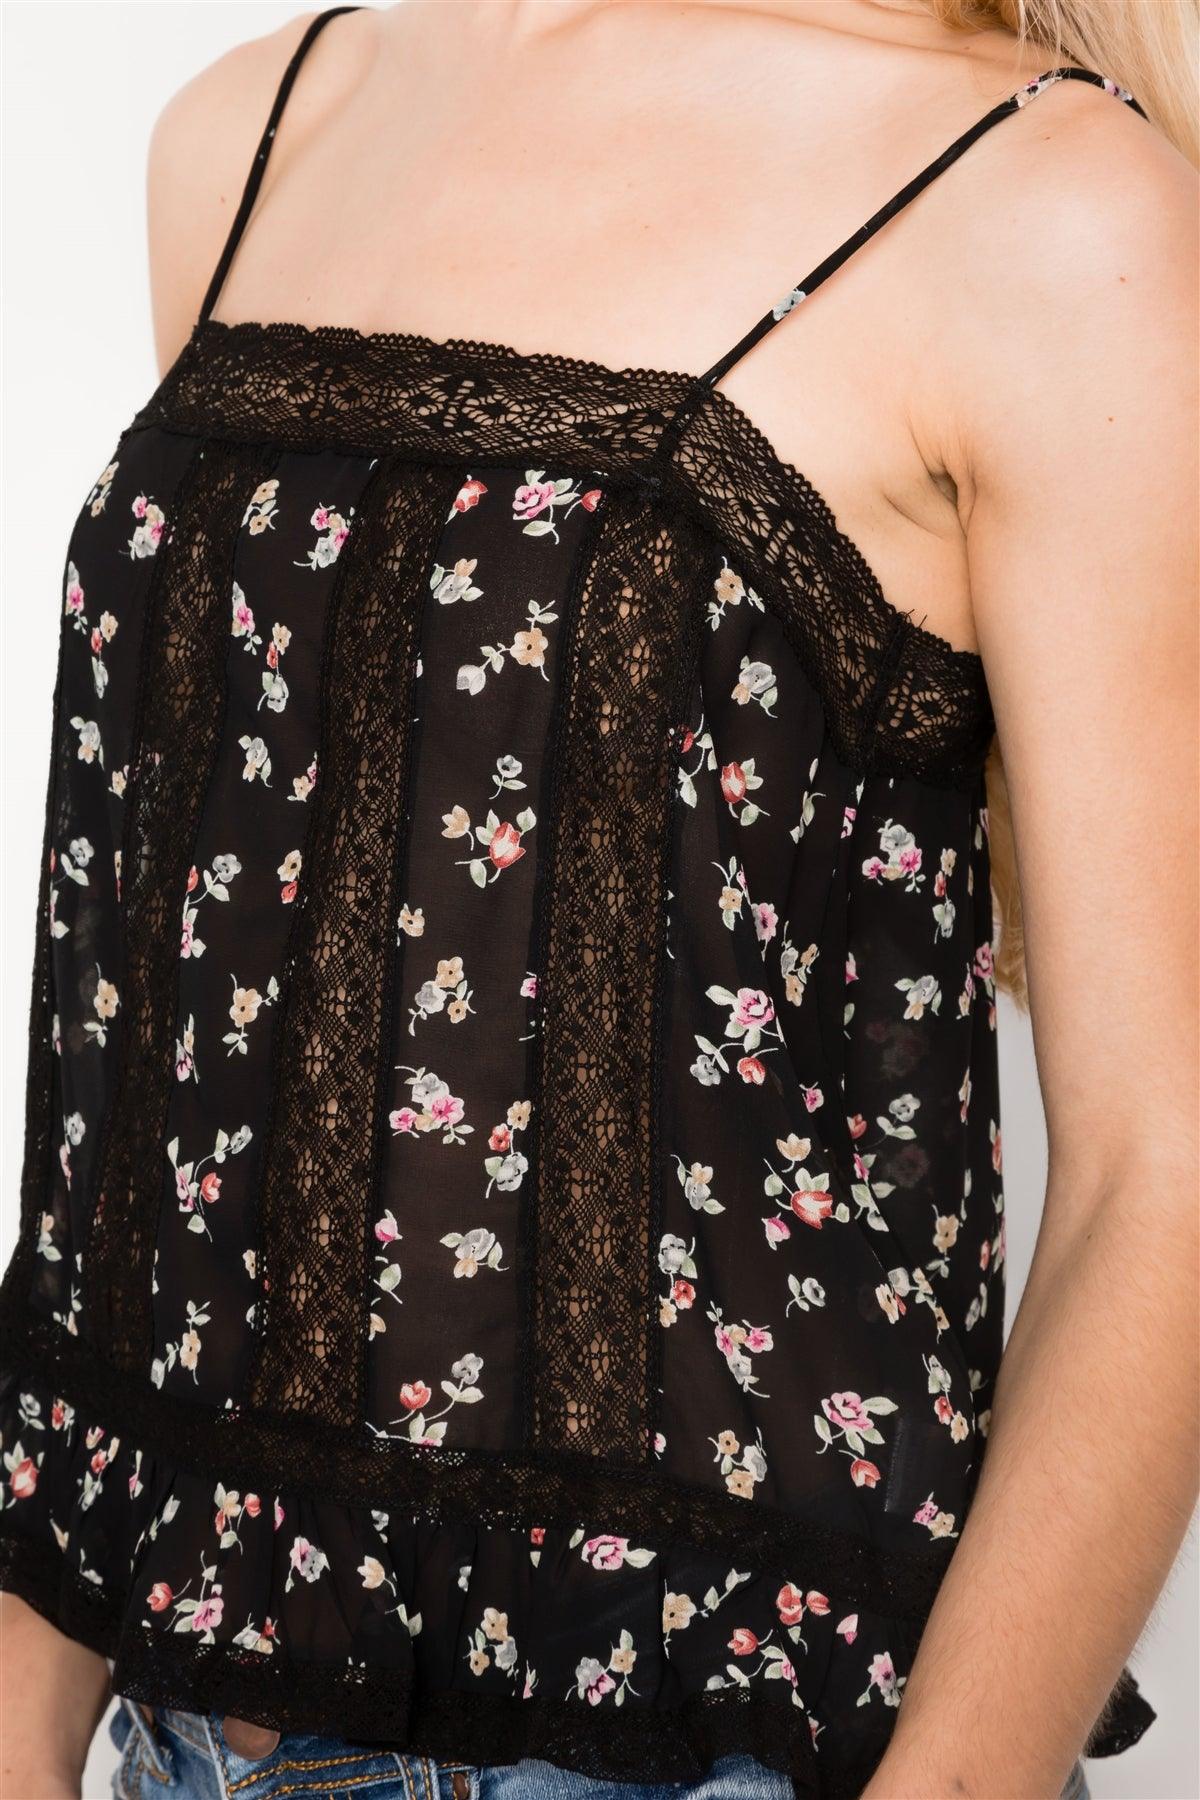 Black Floral Print Lace Trim Cami Sheer Top / 3-2-1